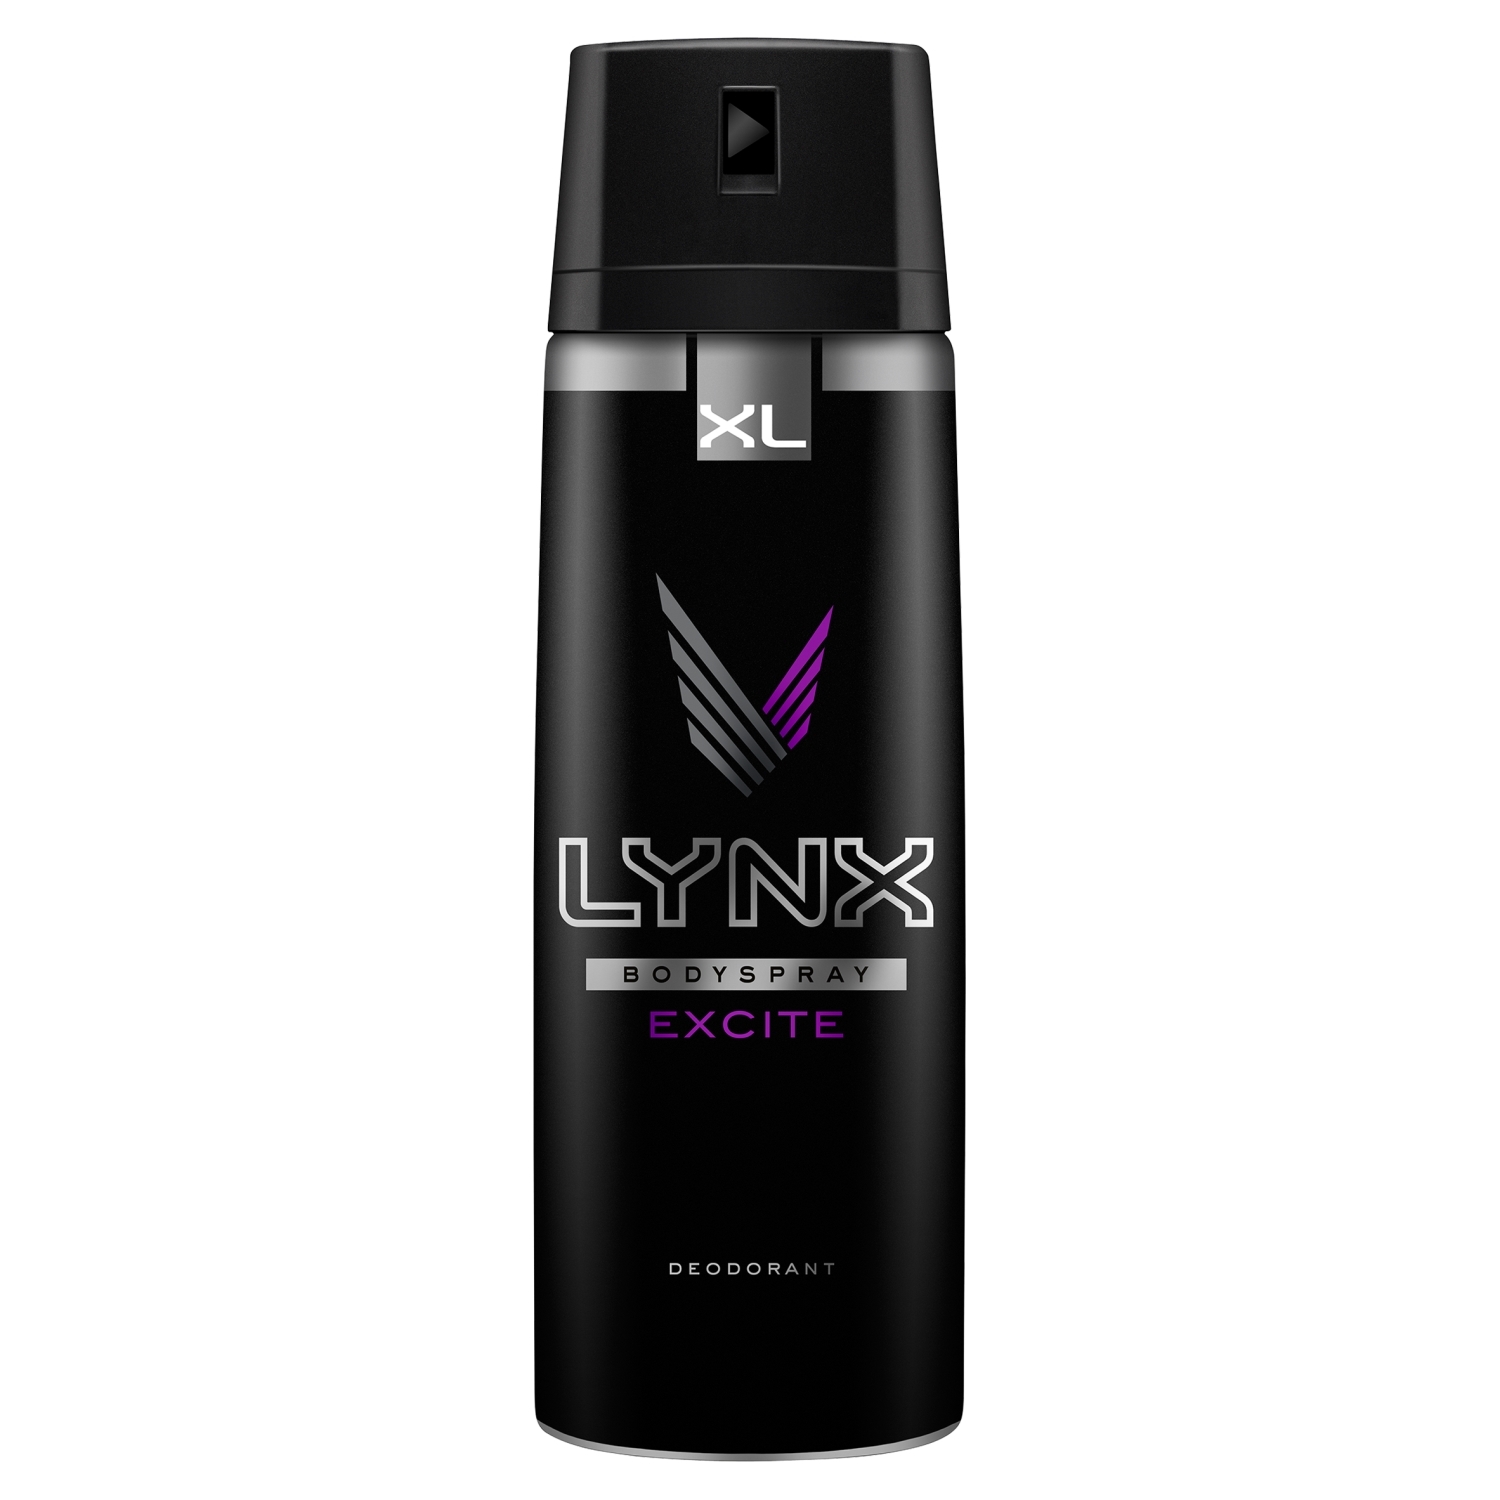 Lynx Excite Body Spray Deodorant Image